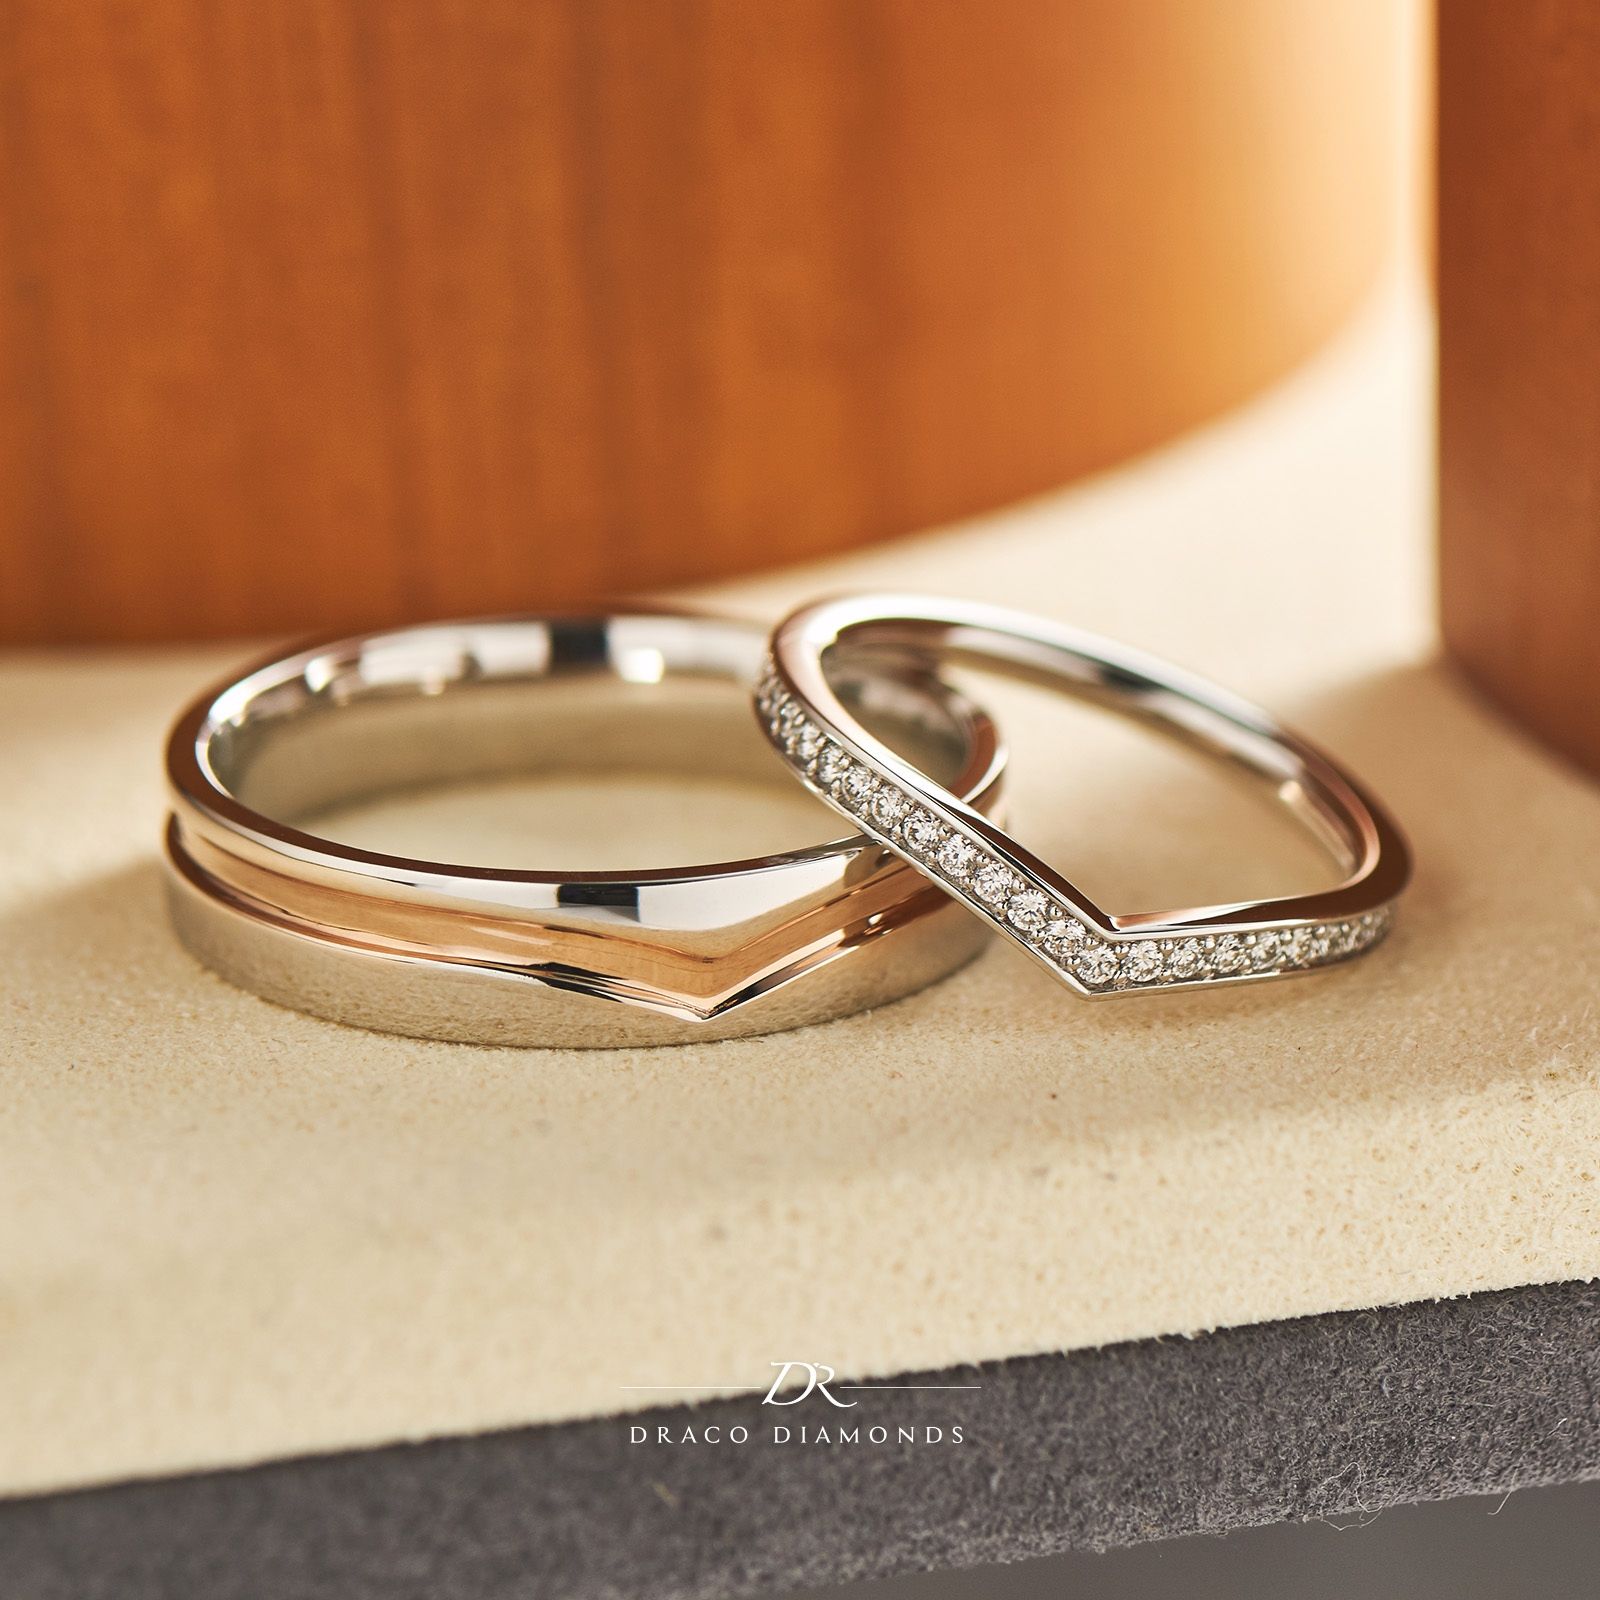 Select matching wedding rings